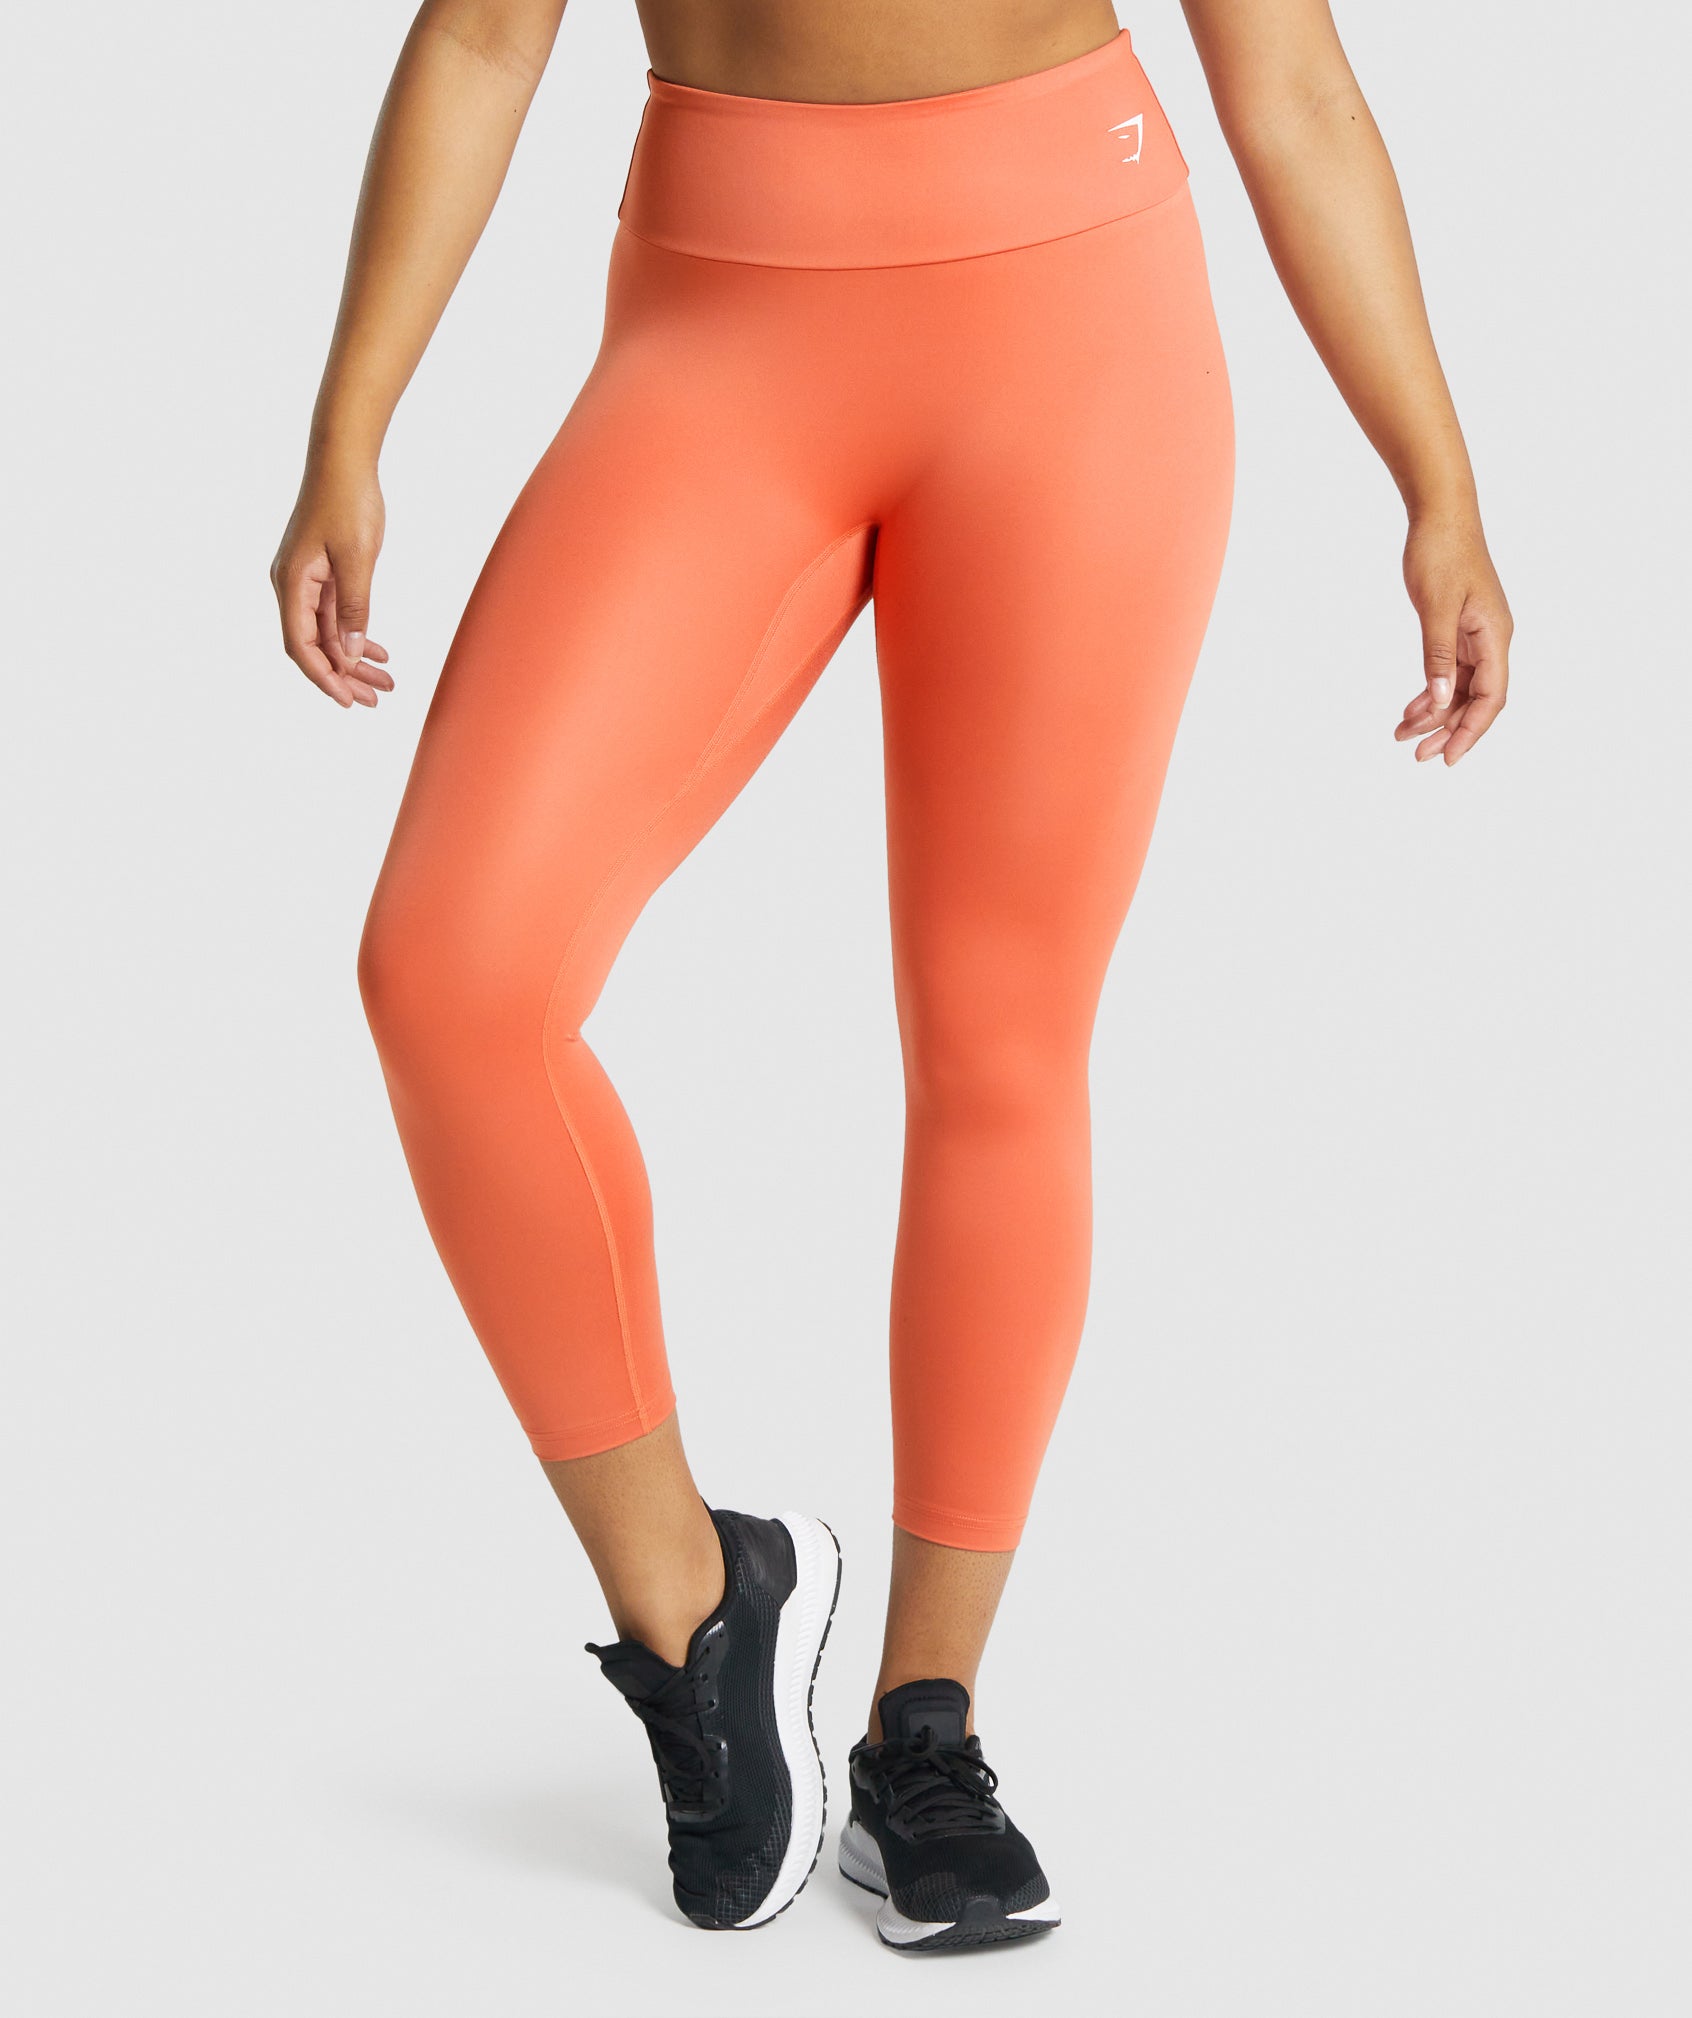 Fitness workout set - Peachy 2.0 - Squat proof - 7 colors – Squat